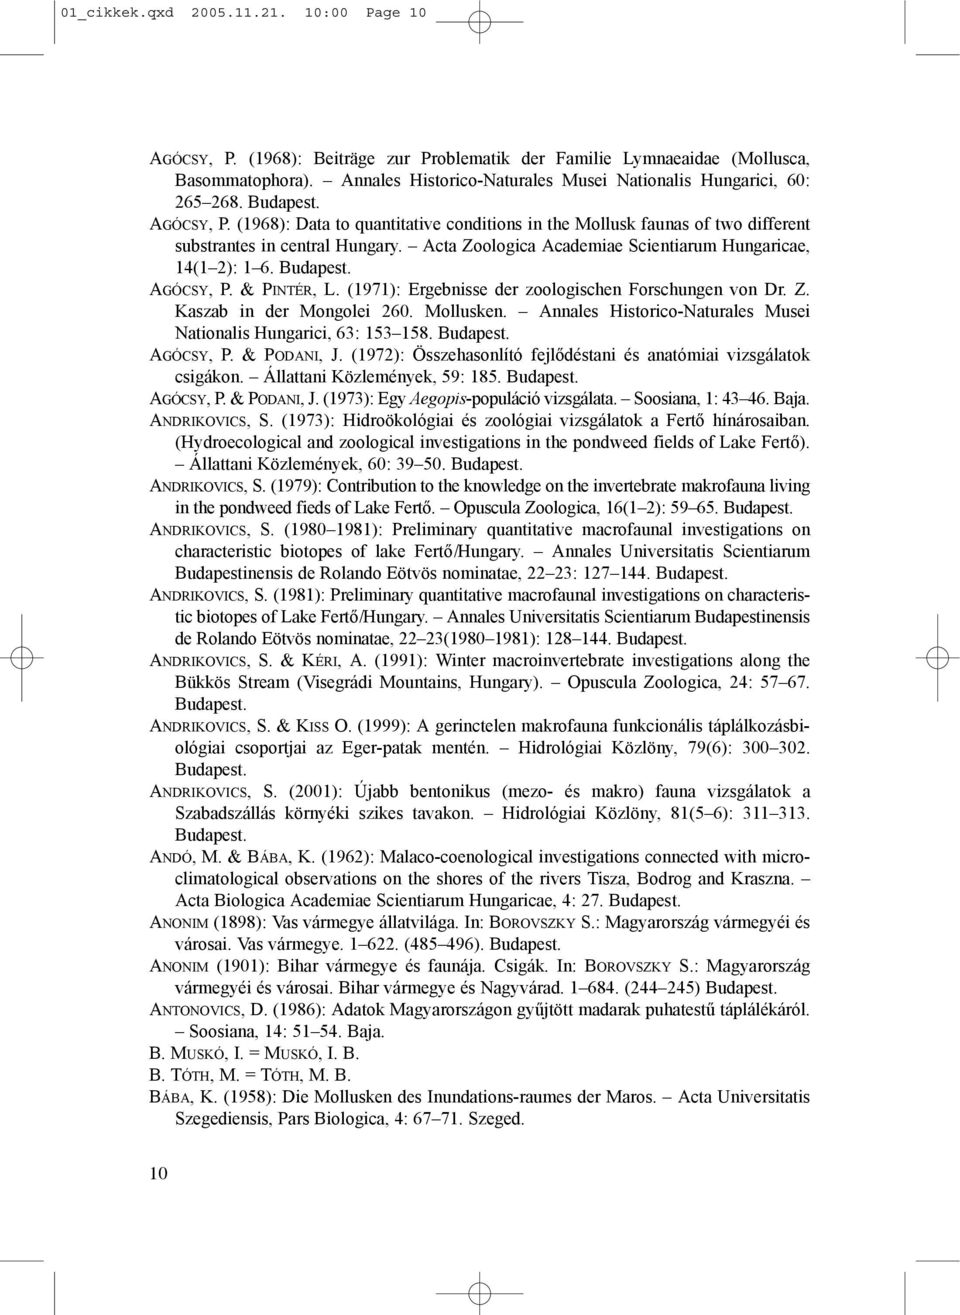 Acta Zoologica Academiae Scientiarum Hungaricae, 14(1 2): 1 6. AGÓCSY, P. & PINTÉR, L. (1971): Ergebnisse der zoologischen Forschungen von Dr. Z. Kaszab in der Mongolei 260. Mollusken.